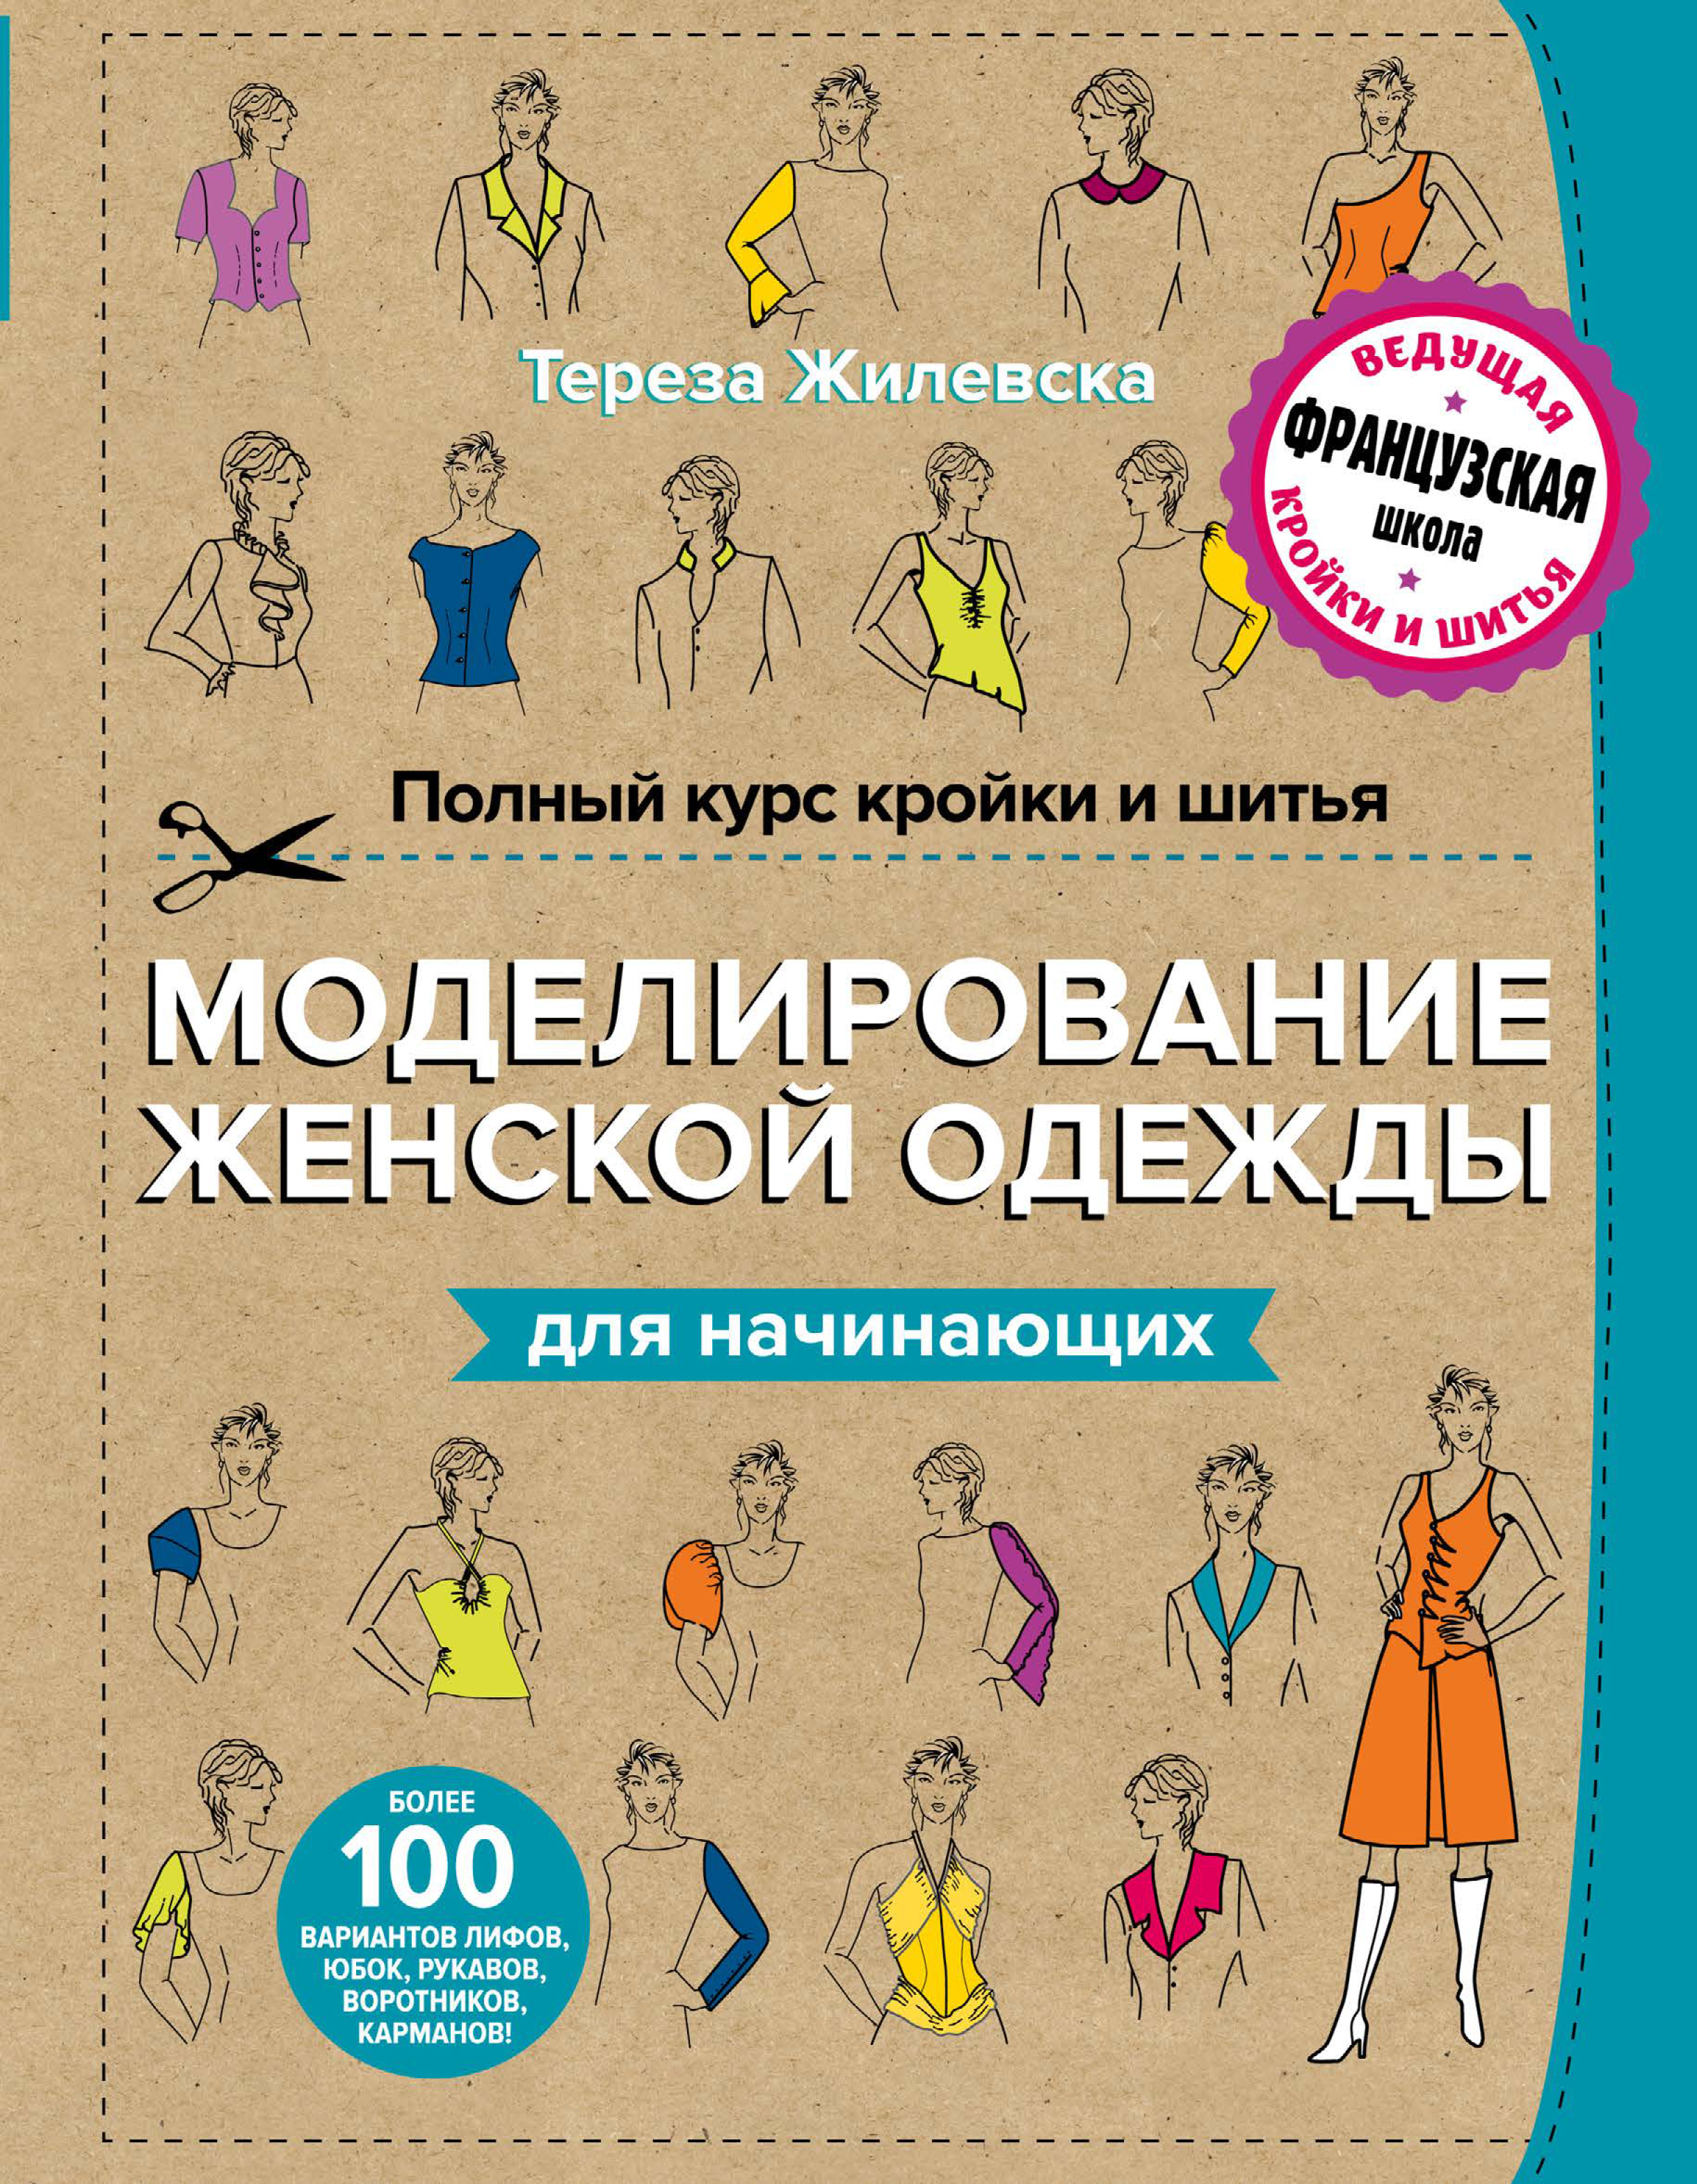 Курсы кройки и шитья в Москве для начинающих — Марианна